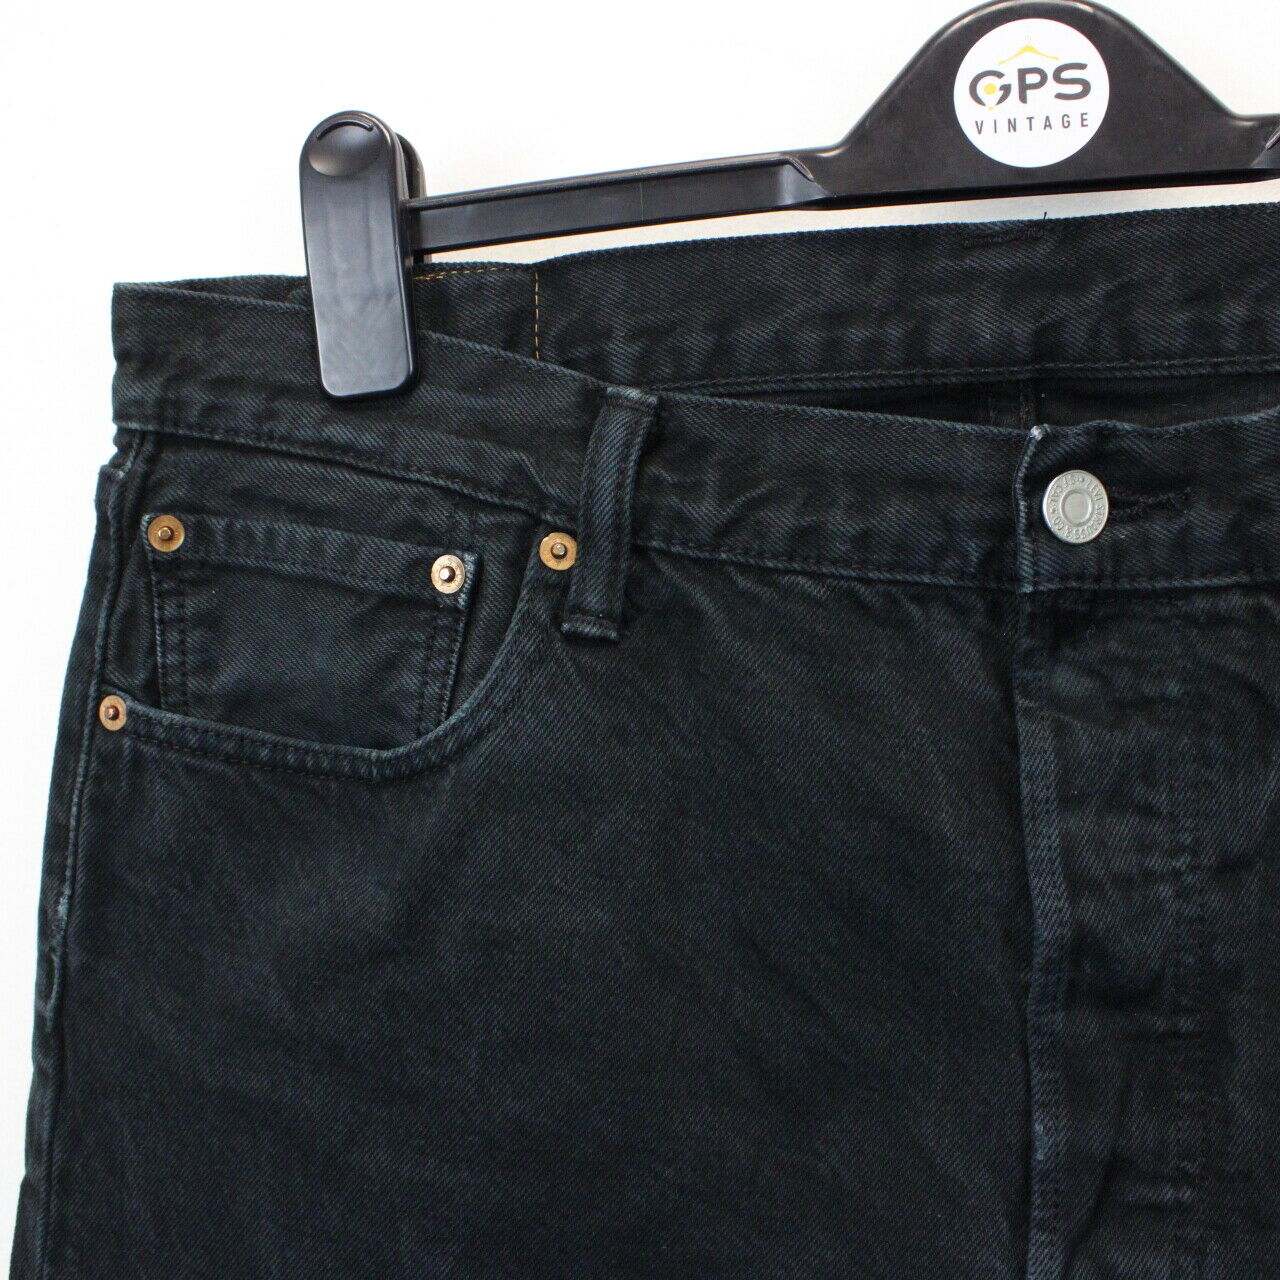 LEVIS 501 Jeans Black | W36 L28